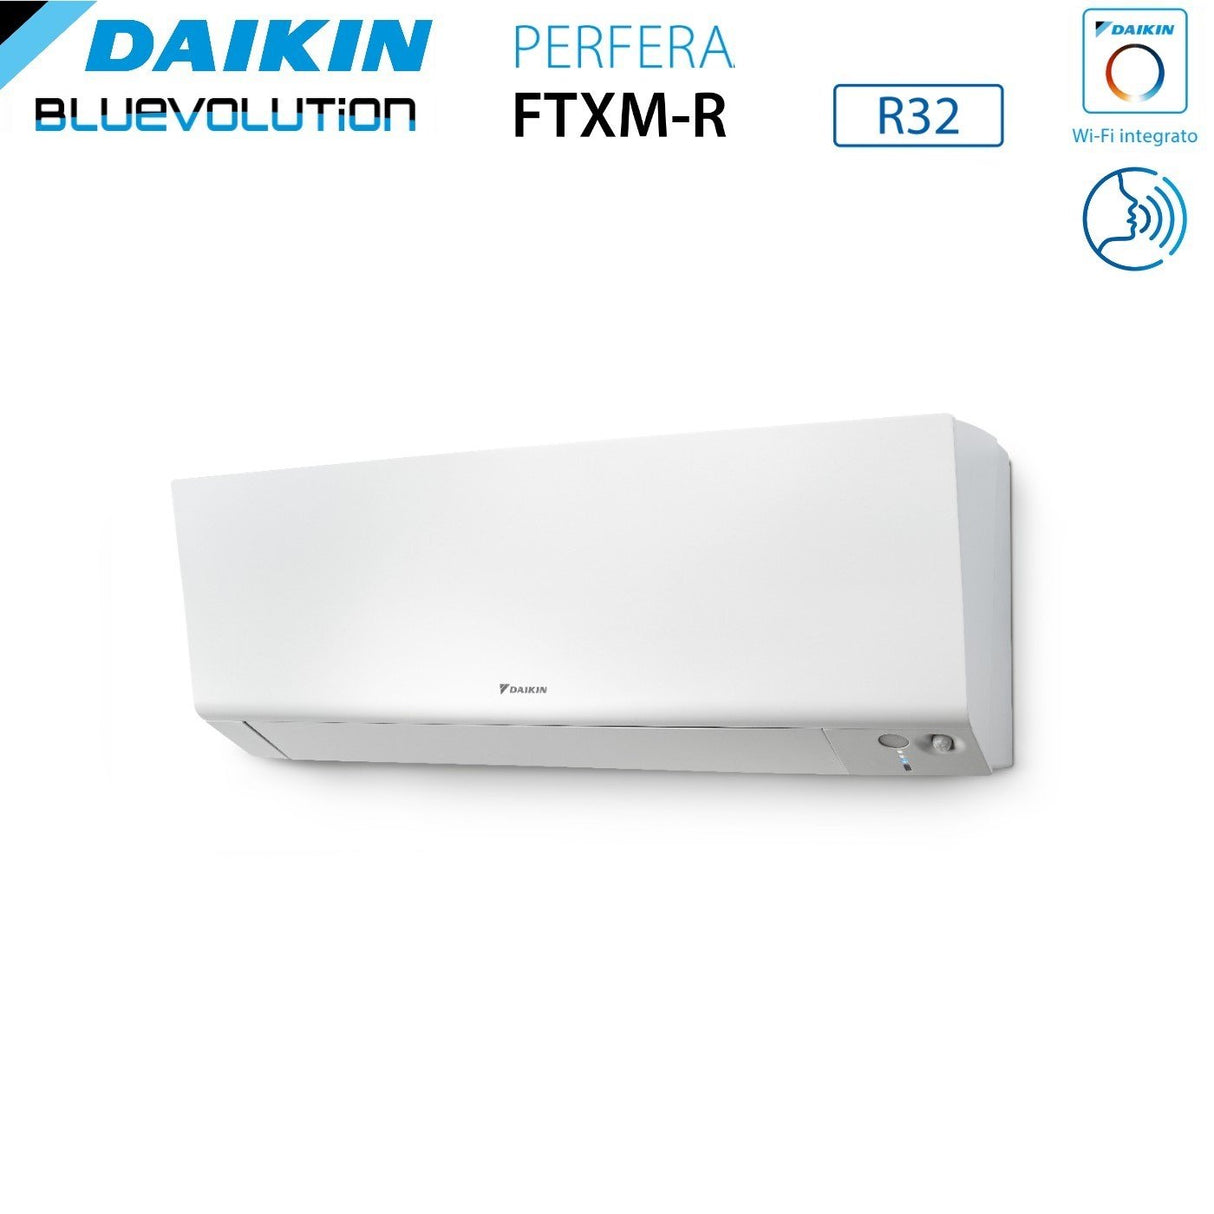 immagine-5-daikin-climatizzatore-condizionatore-daikin-bluevolution-quadri-split-inverter-serie-ftxmr-perfera-wall-791515-con-4mxm80a-r-32-wi-fi-integrato-700090001500015000-garanzia-italiana